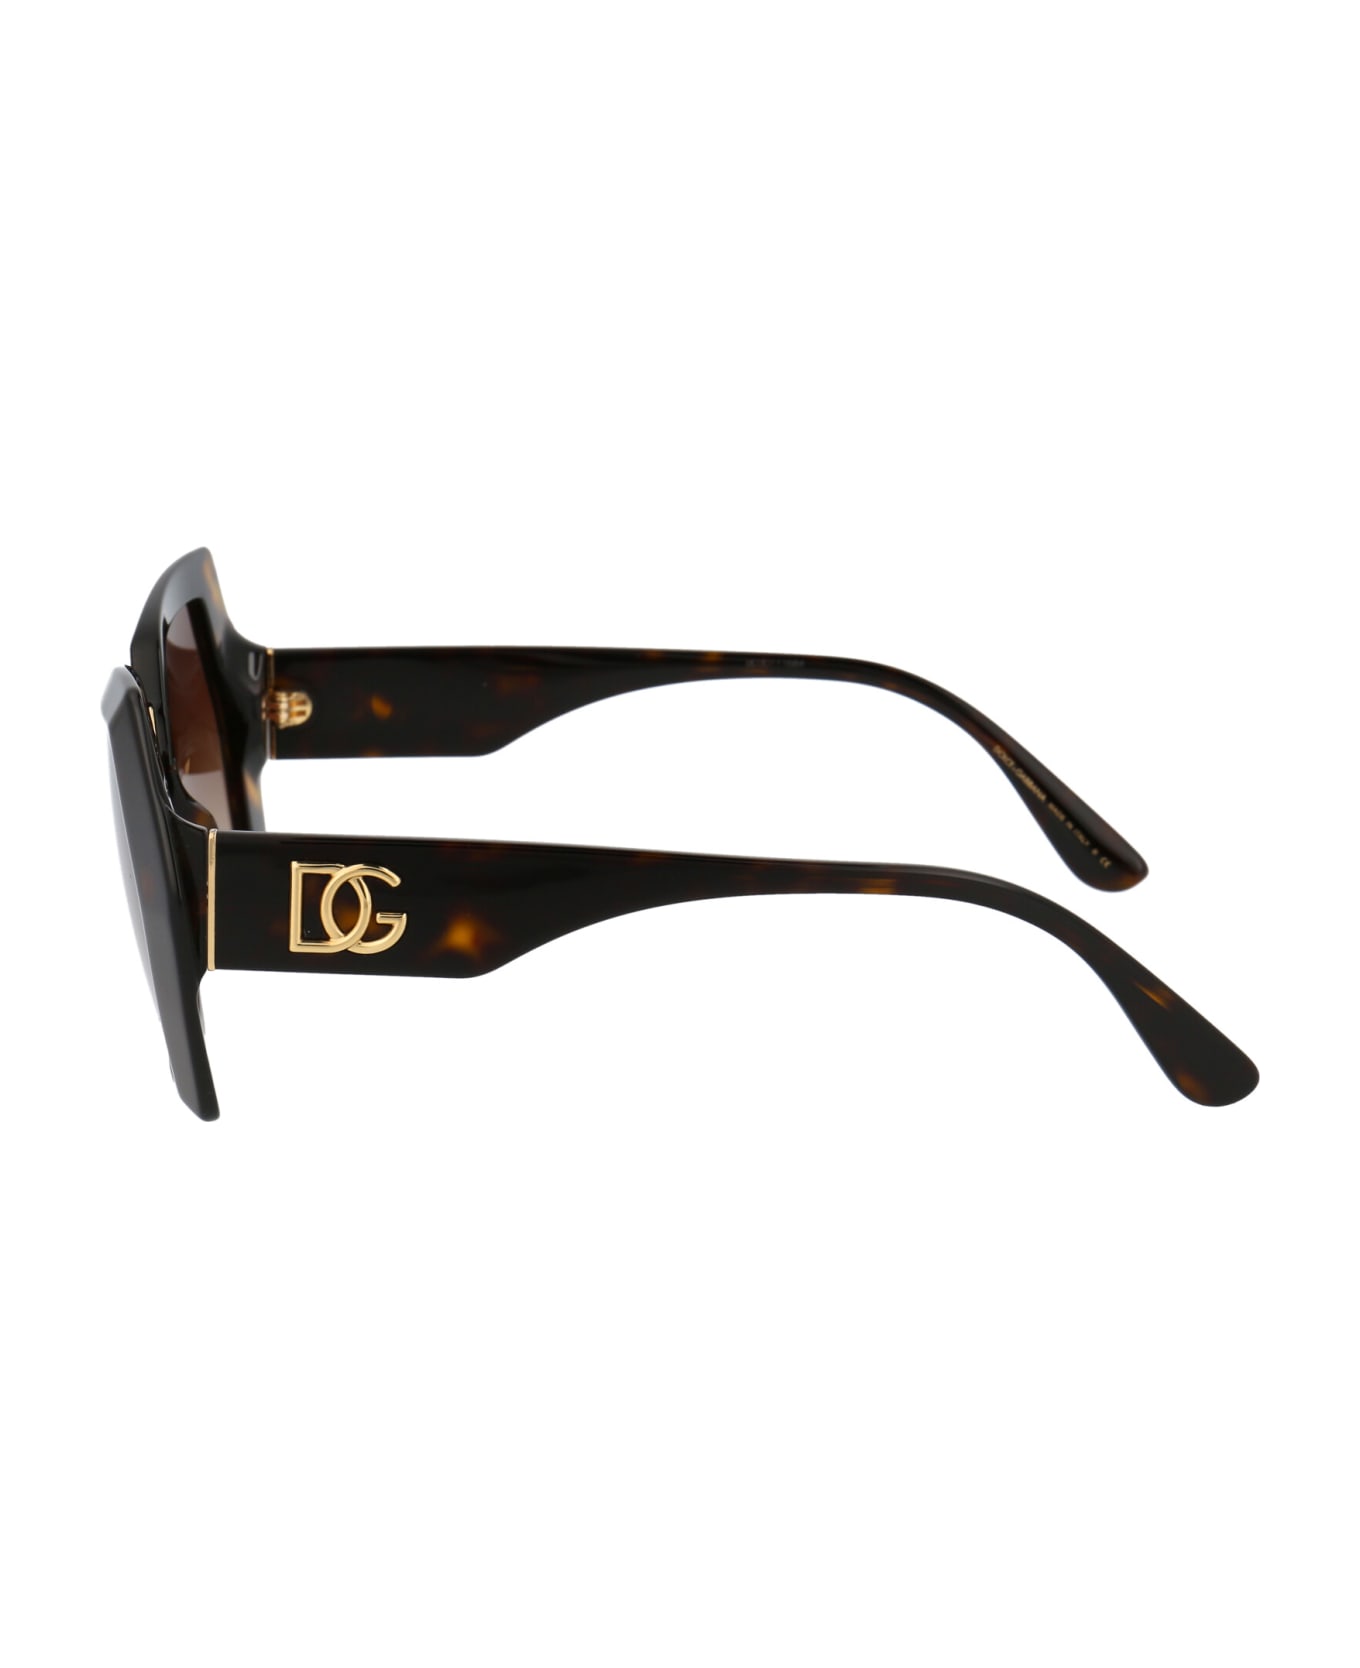 Dolce & Gabbana Eyewear 0dg4377 Sunglasses - 502/13 HAVANA